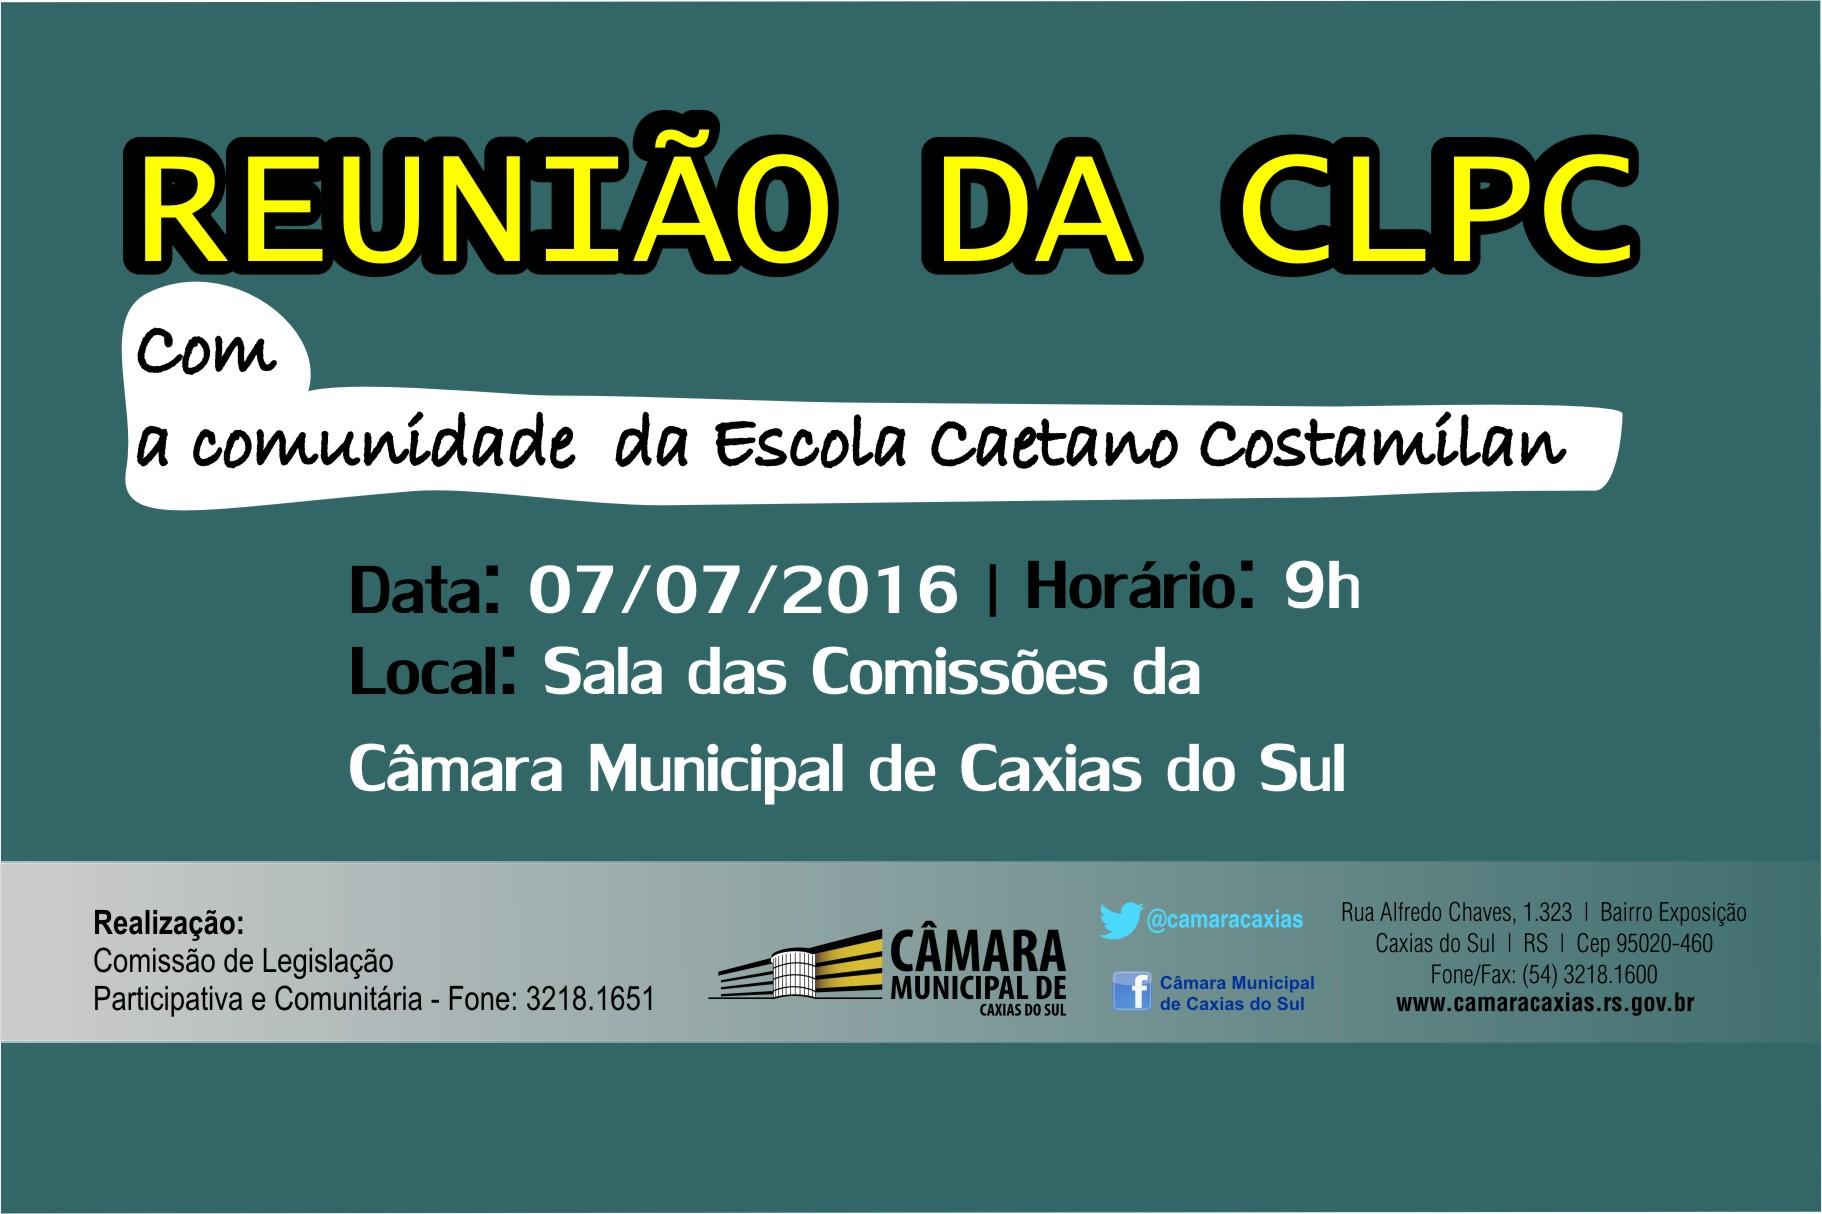 Comissão de Legislação Participativa promove reunião com a comunidade da Escola Caetano Costamilan  